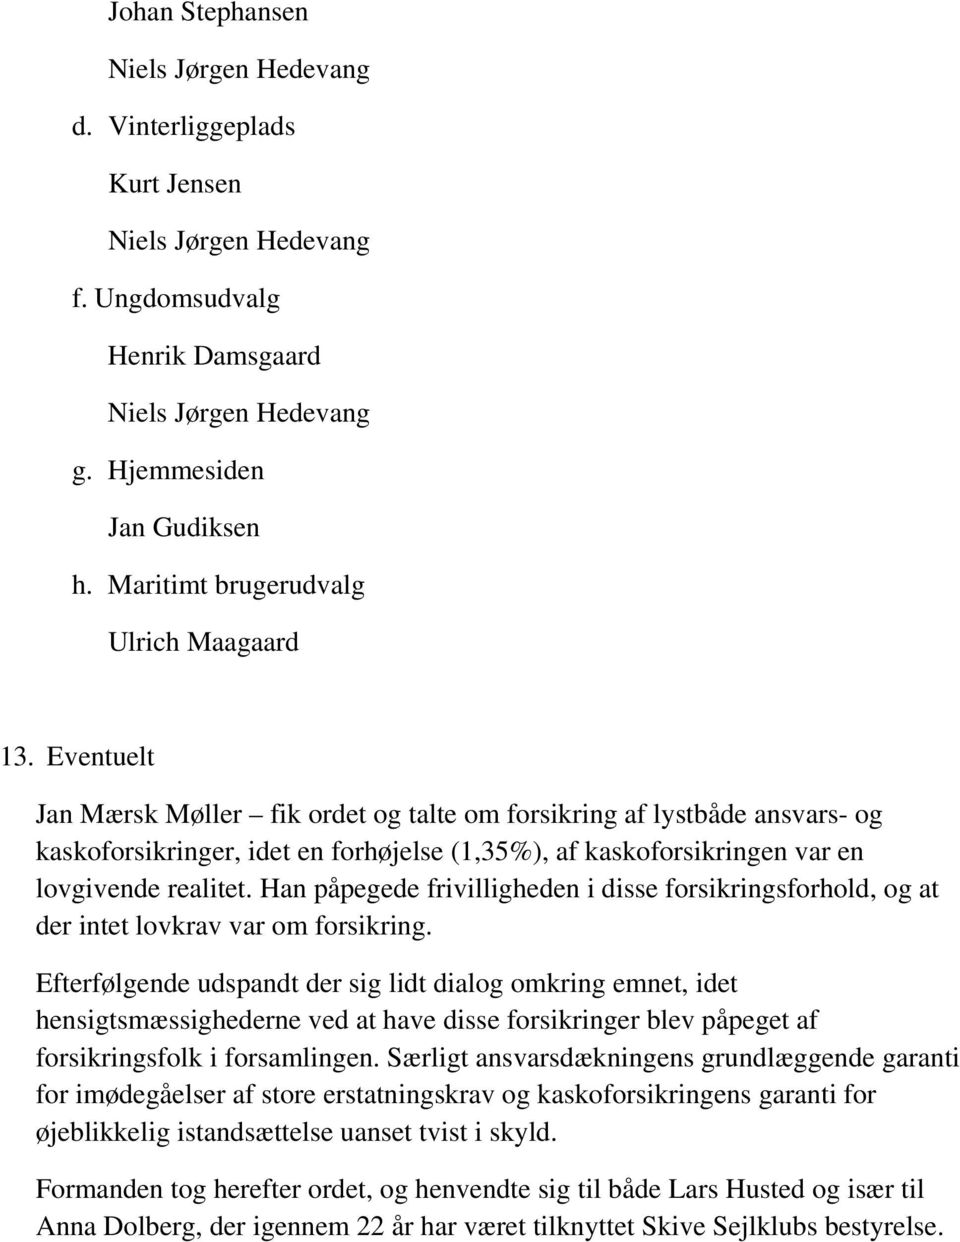 Eventuelt Jan Mærsk Møller fik ordet og talte om forsikring af lystbåde ansvars- og kaskoforsikringer, idet en forhøjelse (1,35%), af kaskoforsikringen var en lovgivende realitet.